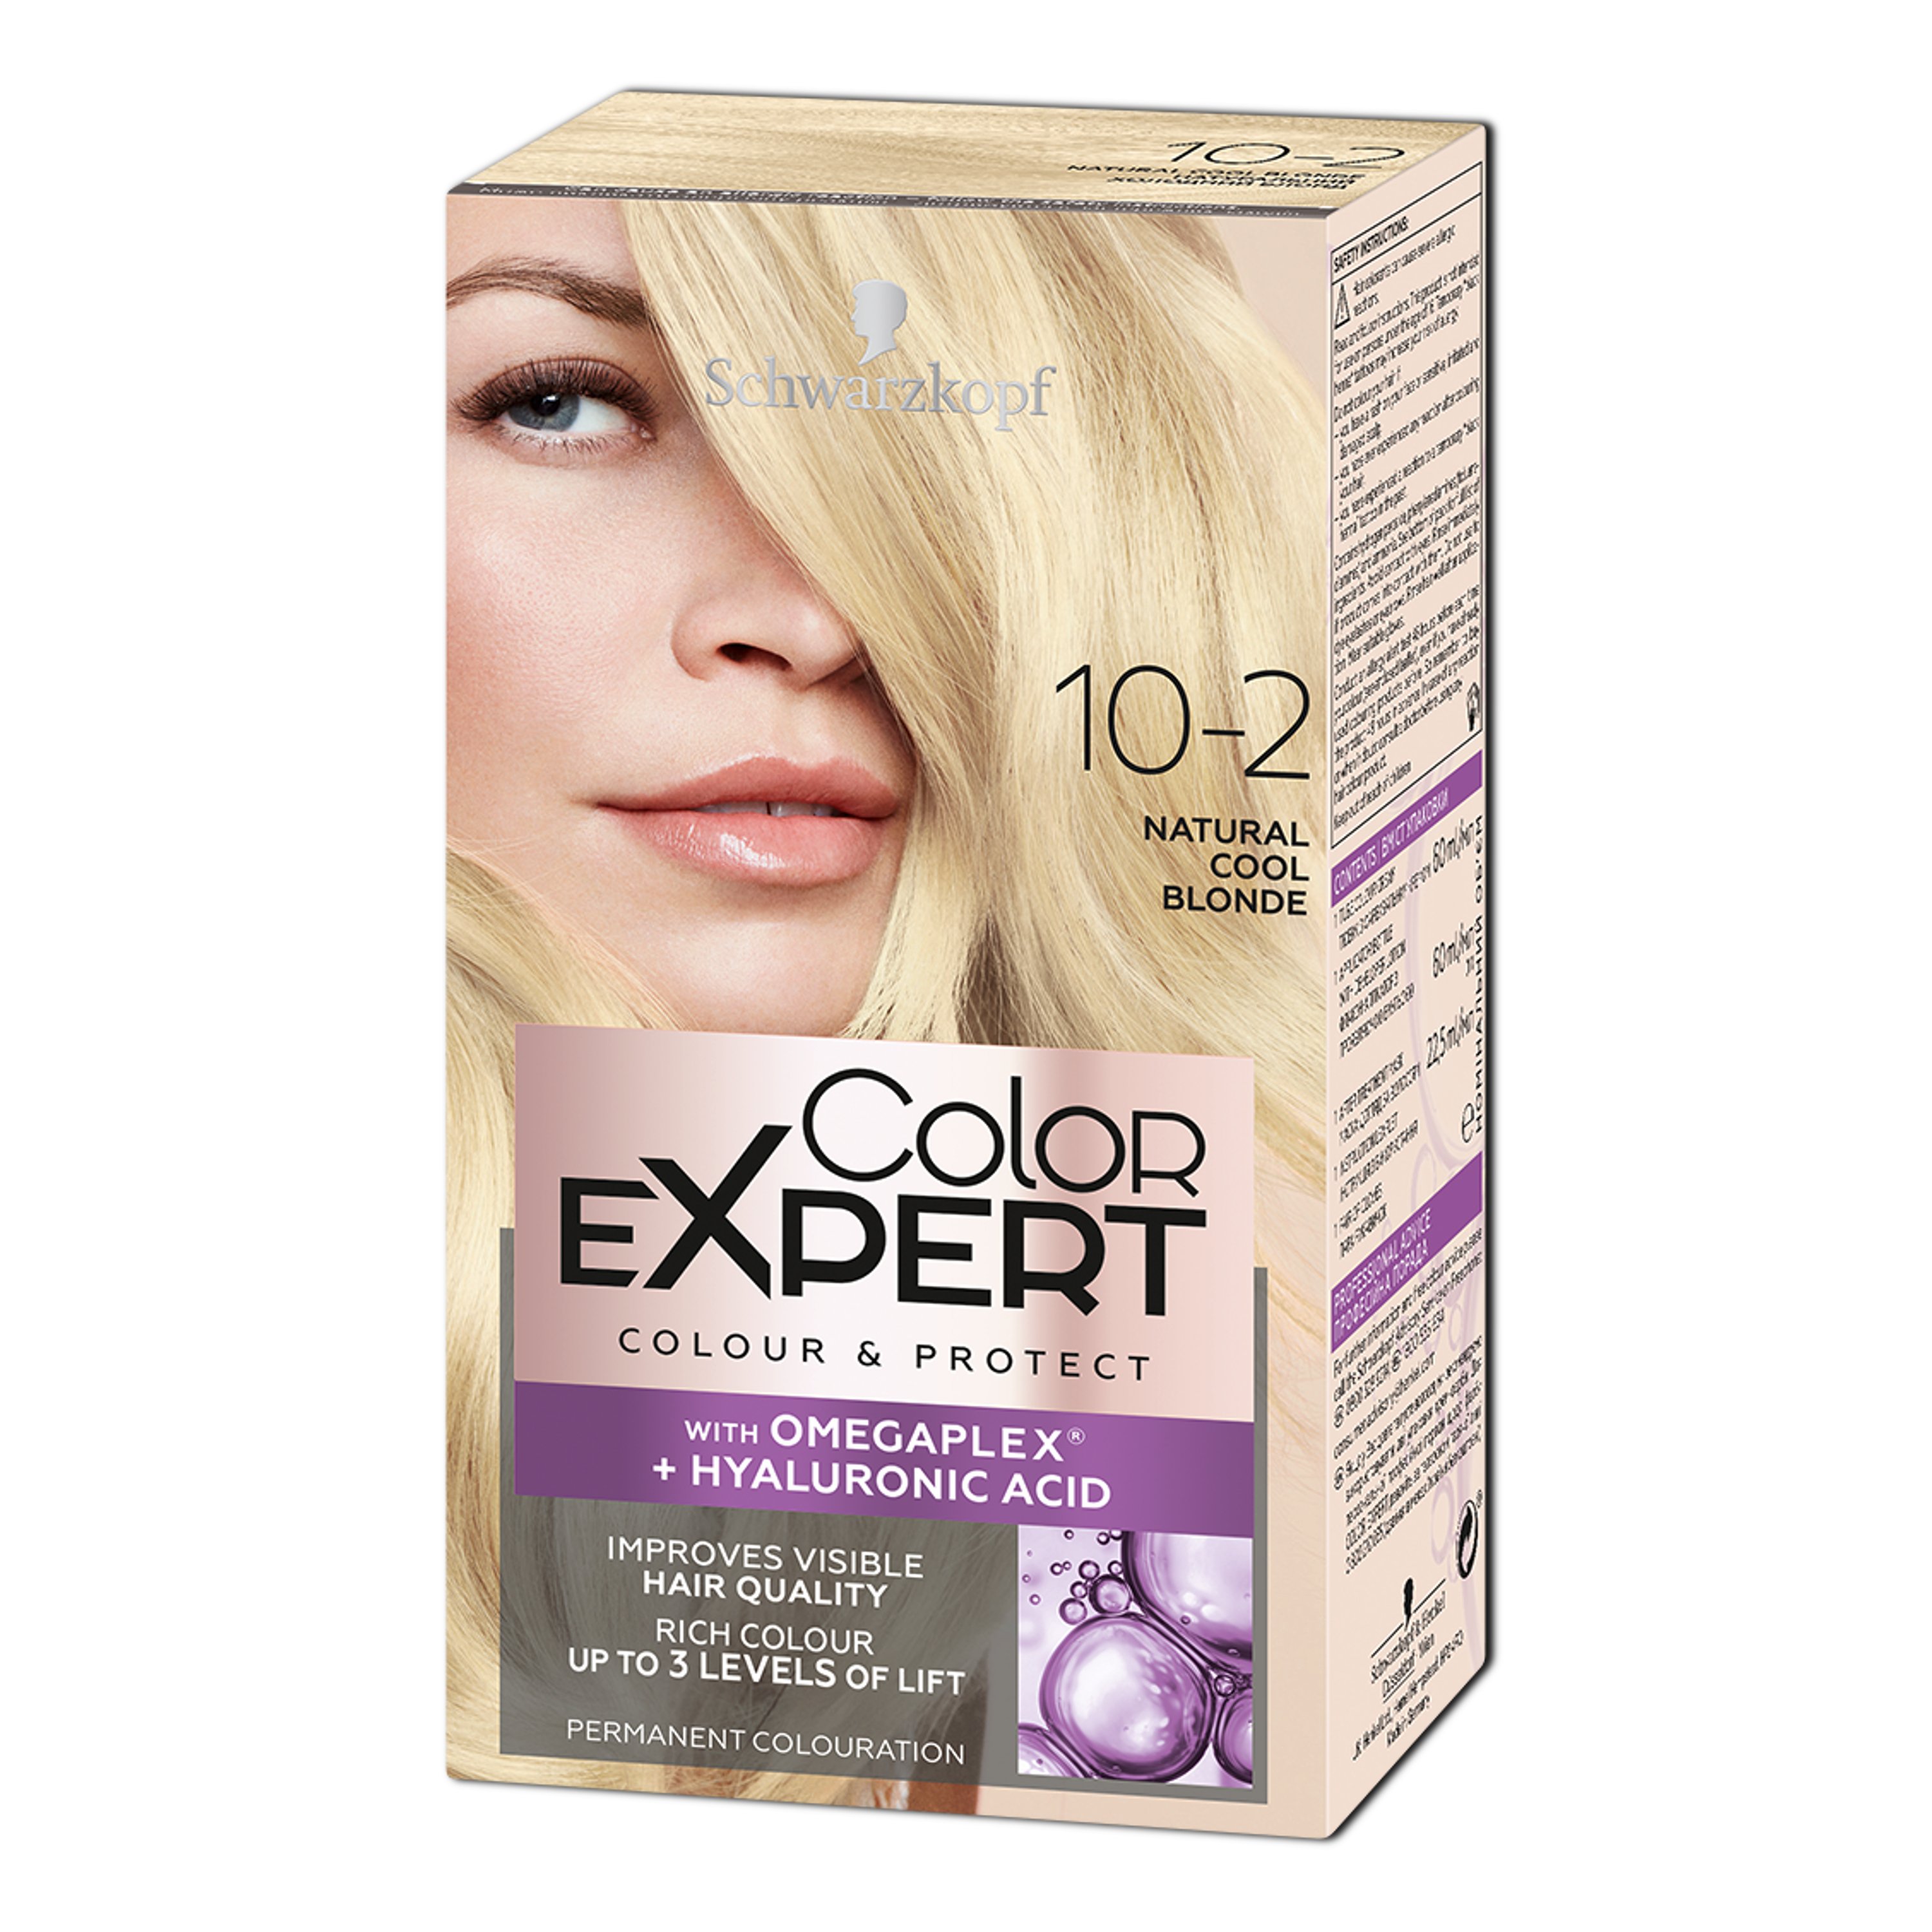 Крем-фарба для волосся Schwarzkopf Color Expert, з гіалуроновою кислотою, відтінок 10-2 (Натуральний Холодний Блонд), 142,5 мл - фото 1